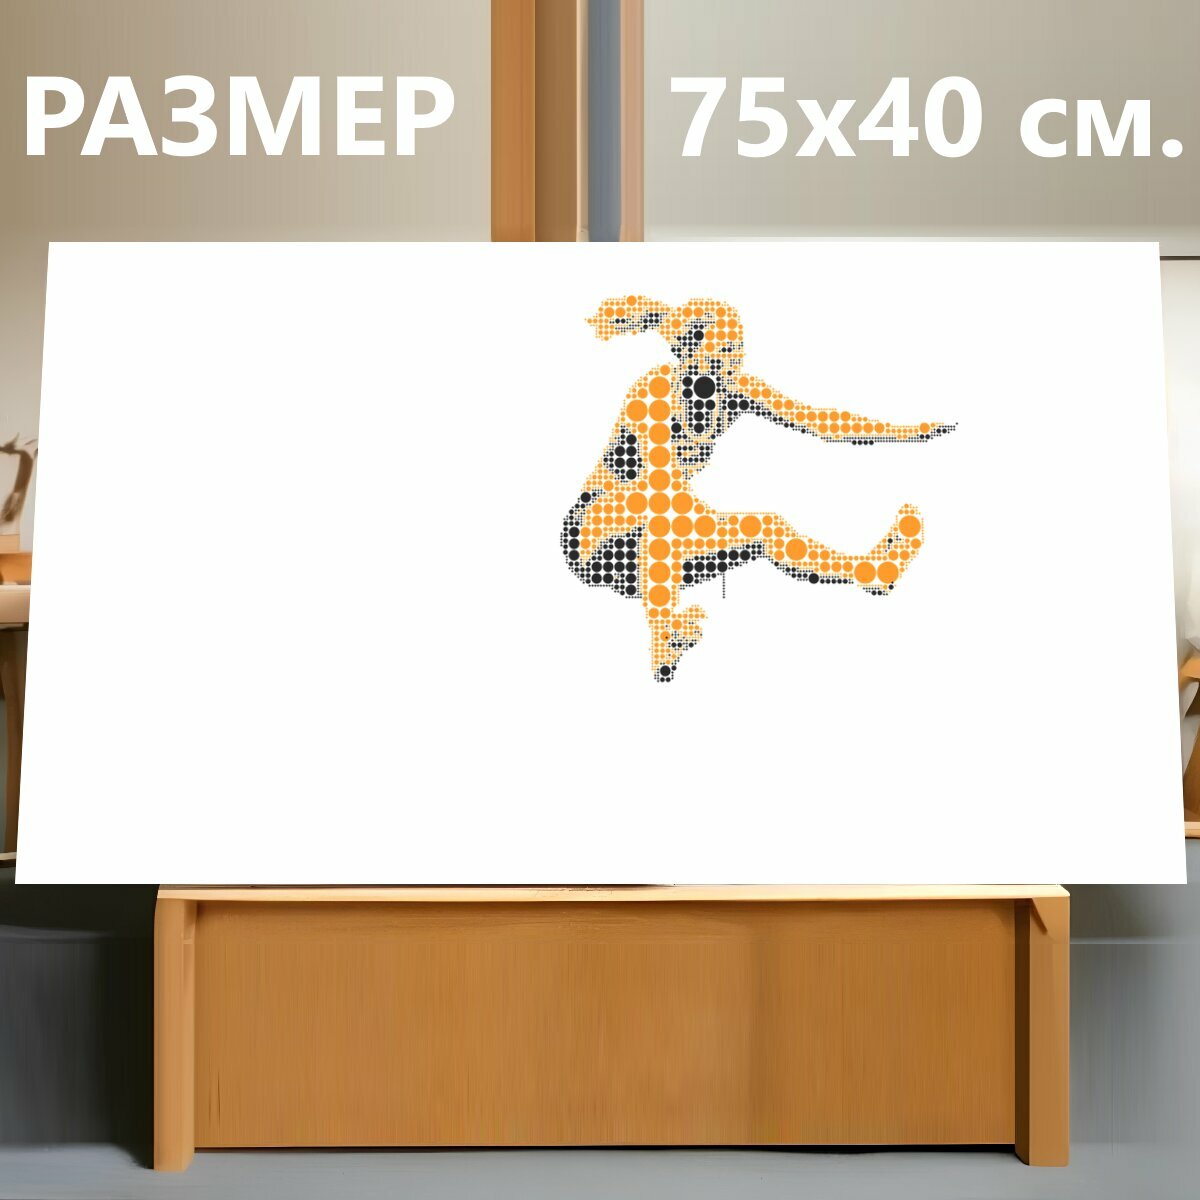 Картина на холсте "Лёгкая атлетика, прыжки в длину, виды спорта" на подрамнике 75х40 см. для интерьера